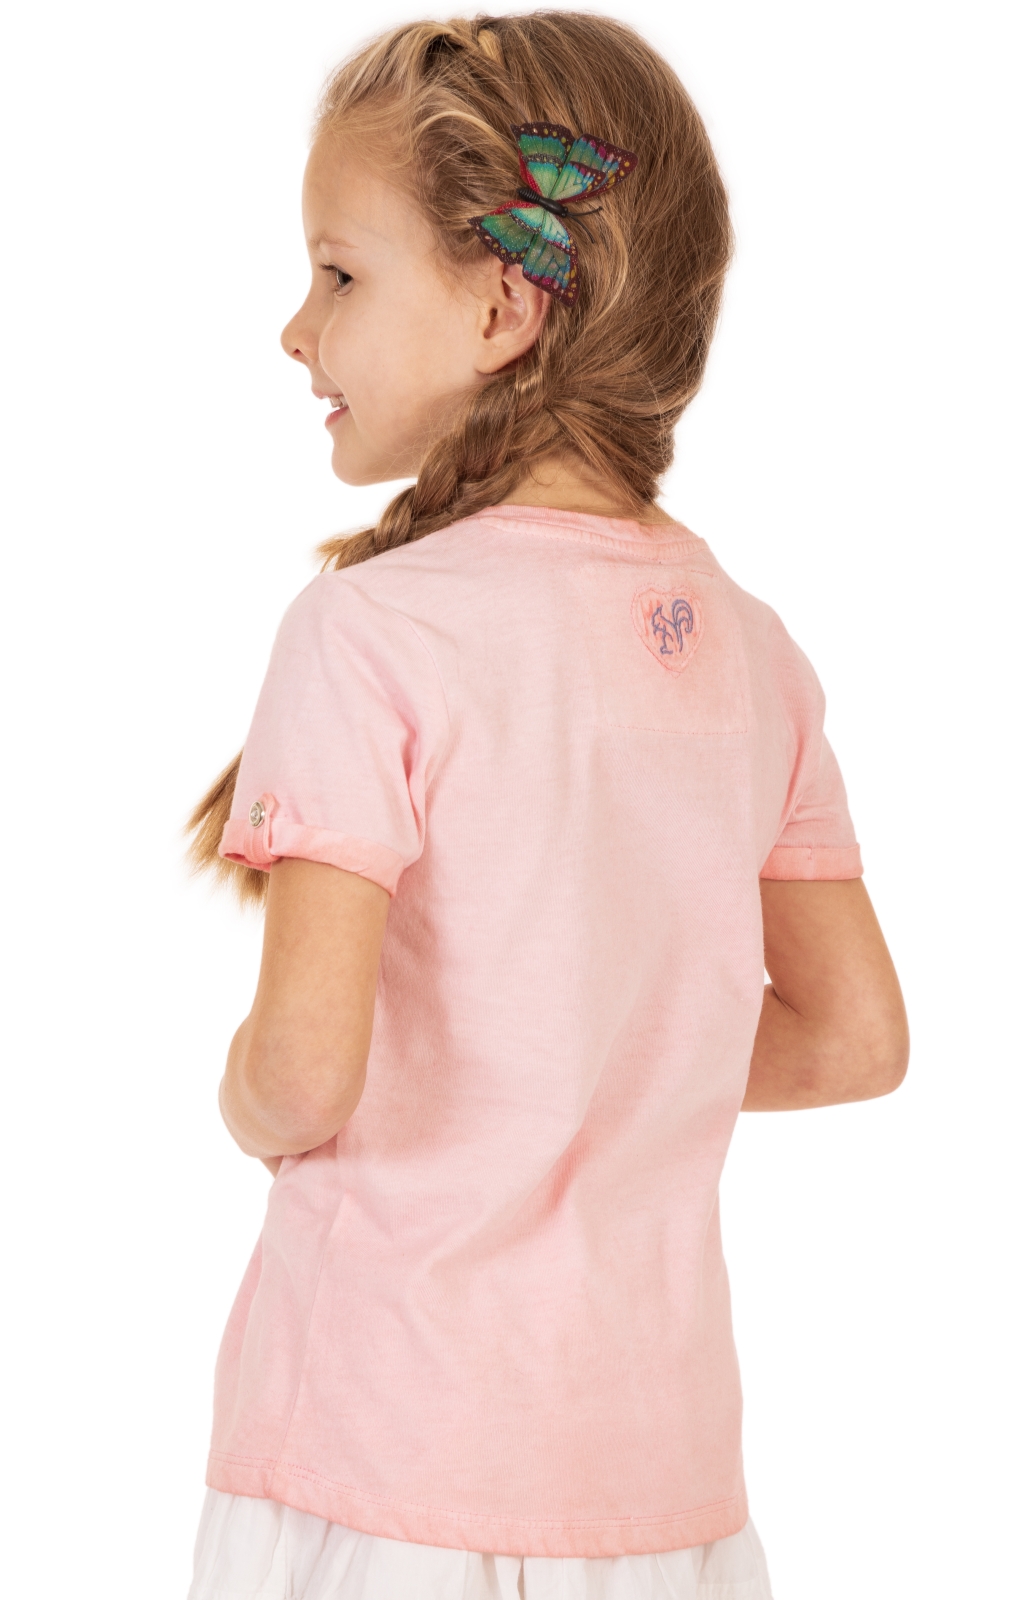 weitere Bilder von Trachten Kinder T-Shirt D16 THEA KIDS apricot